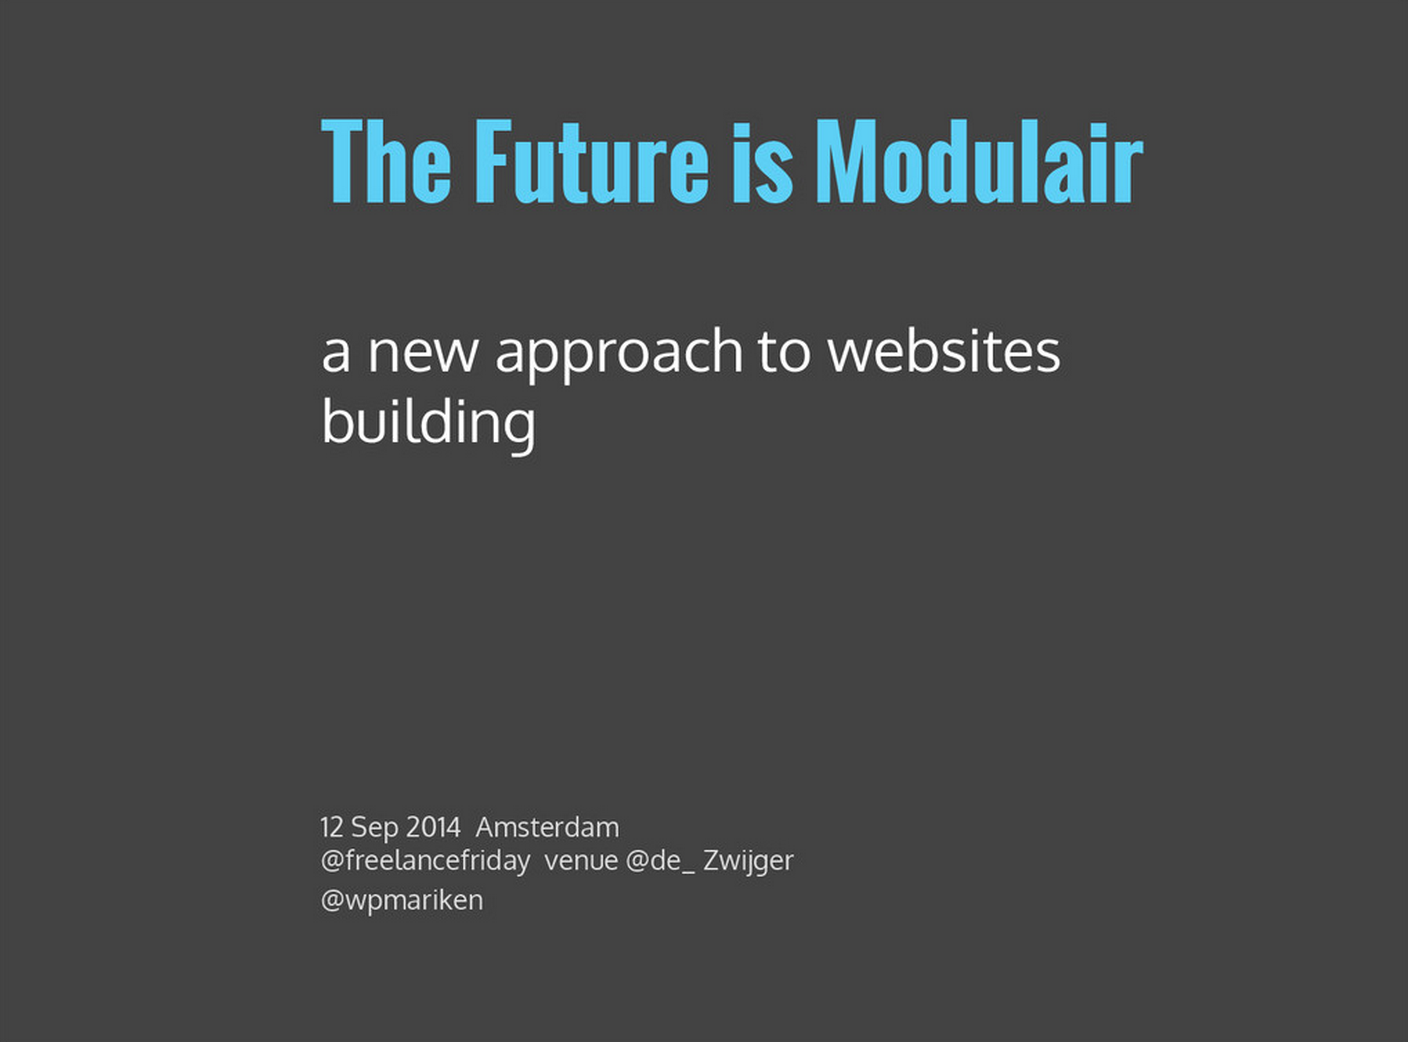 The future is modular